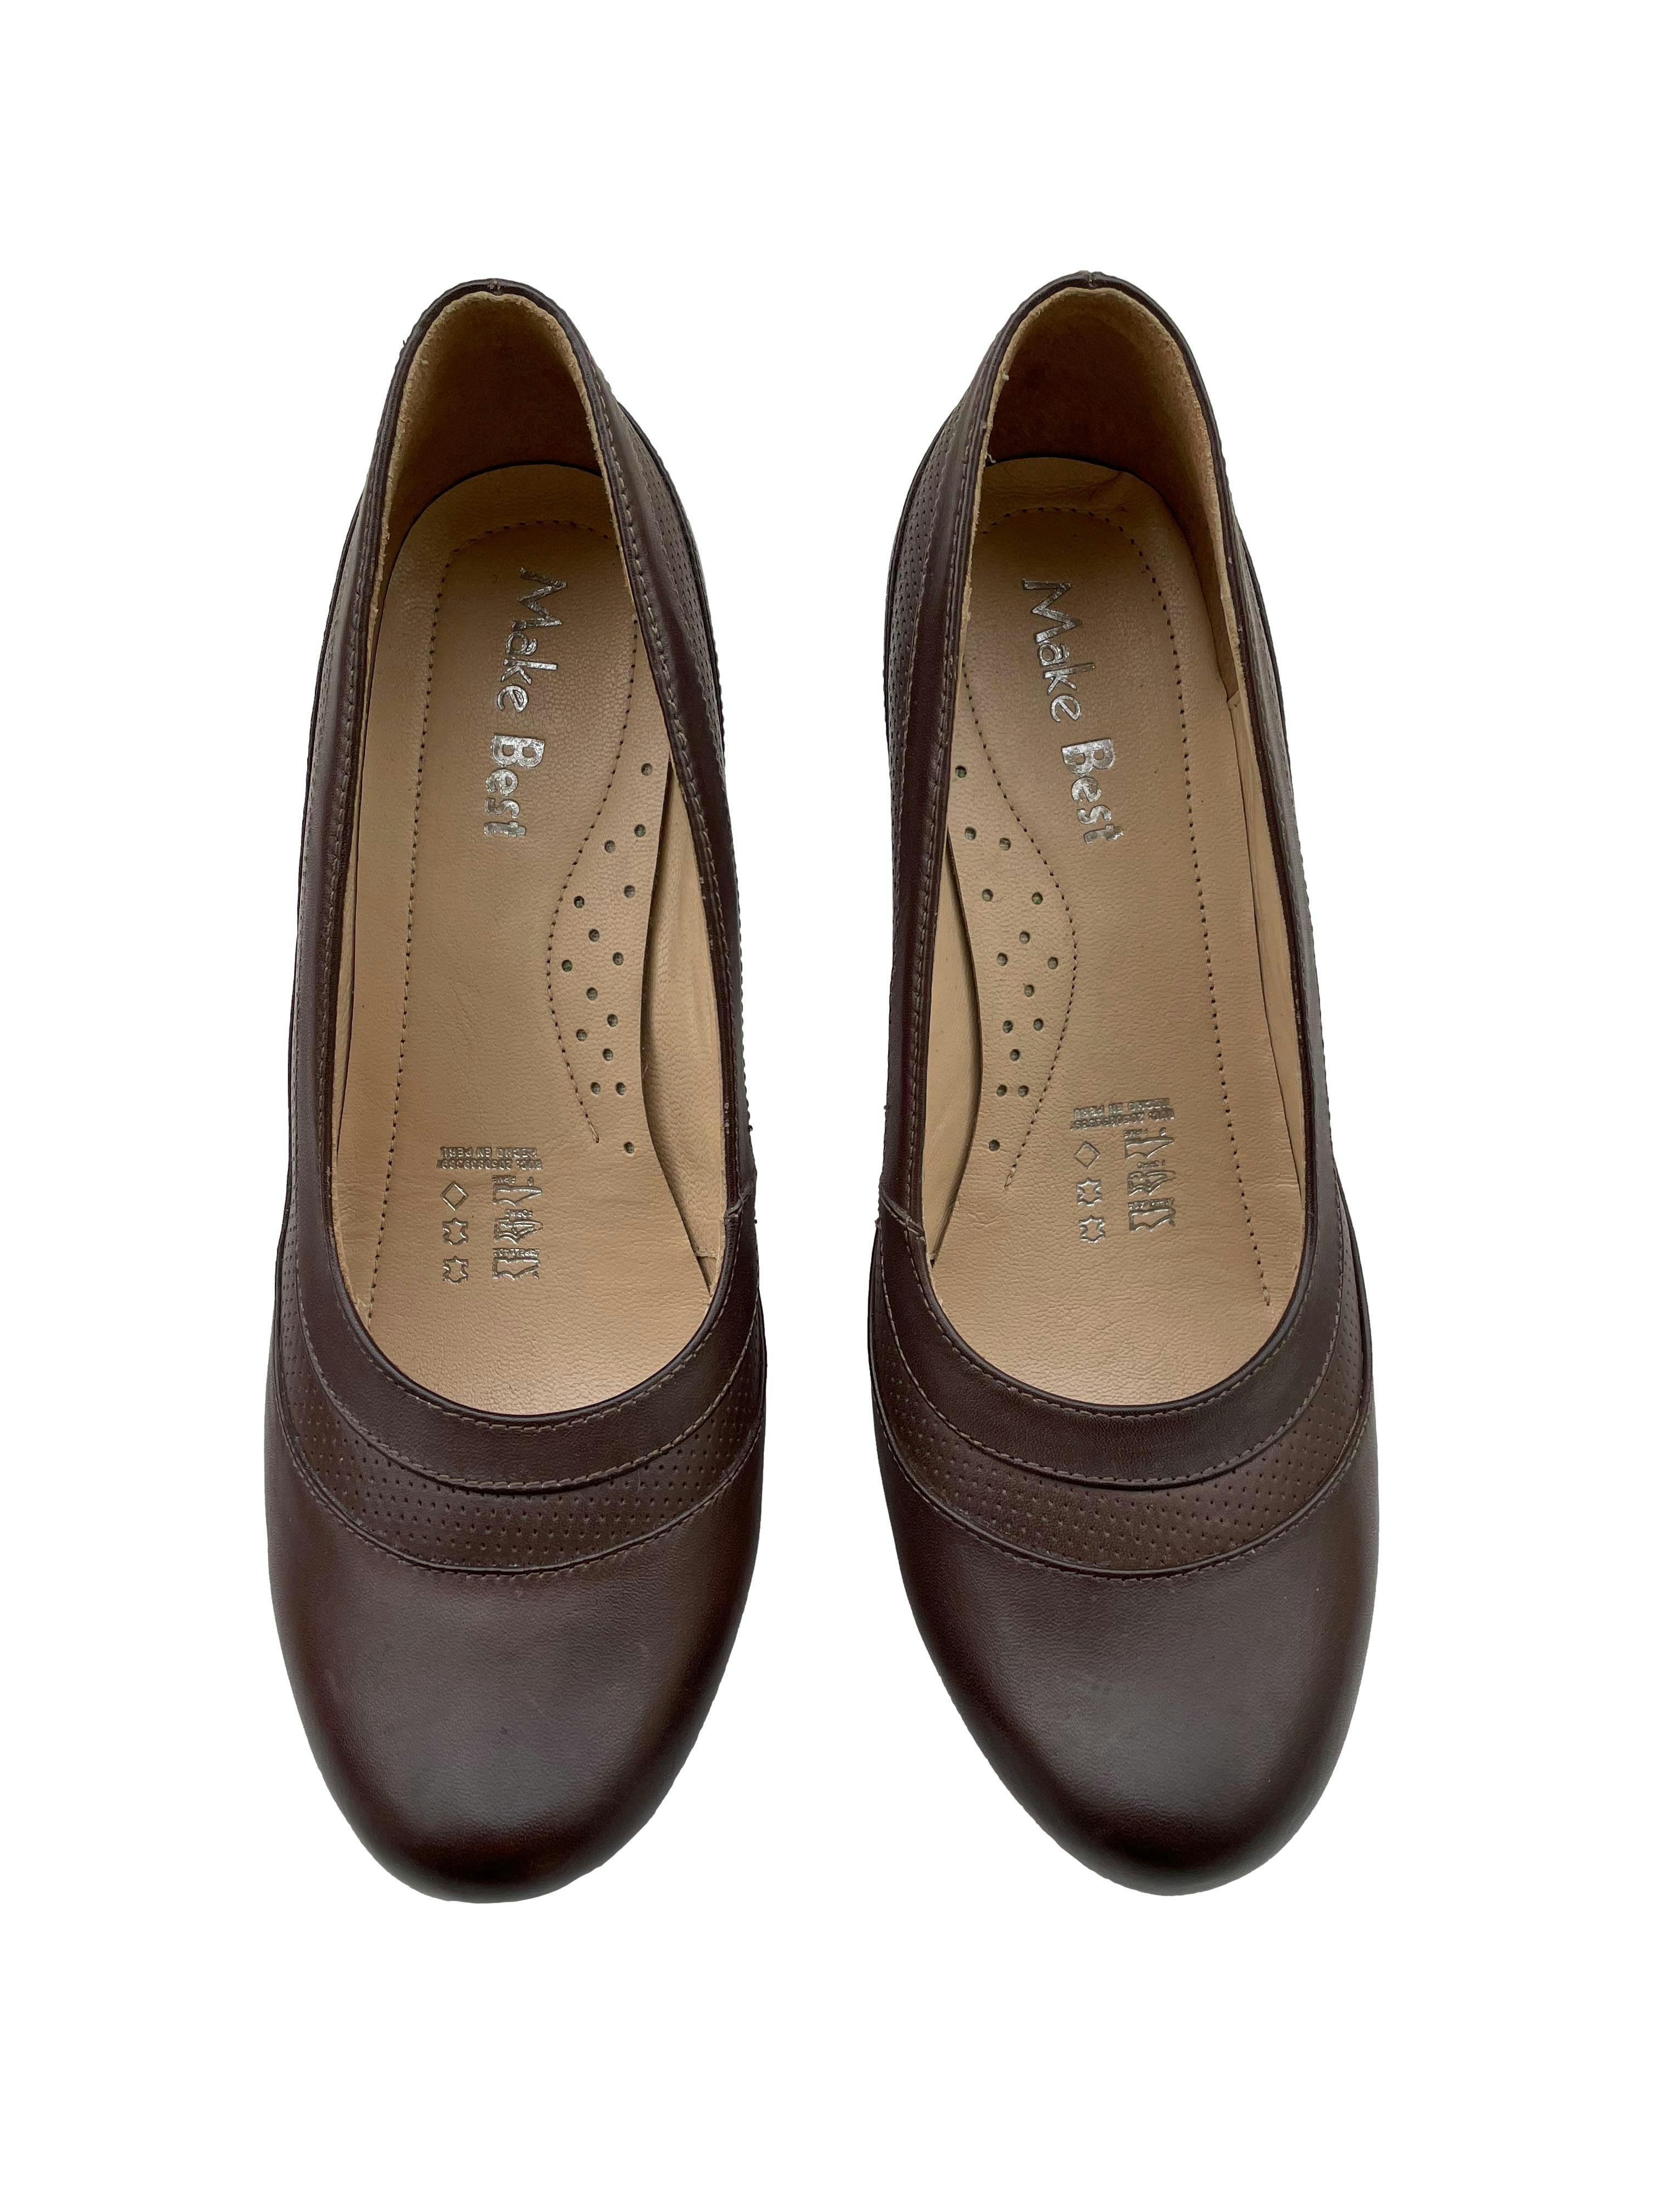 Zapatos Make best de cuero marrón, taco 11cm plataforma 2cm. Como nuevos